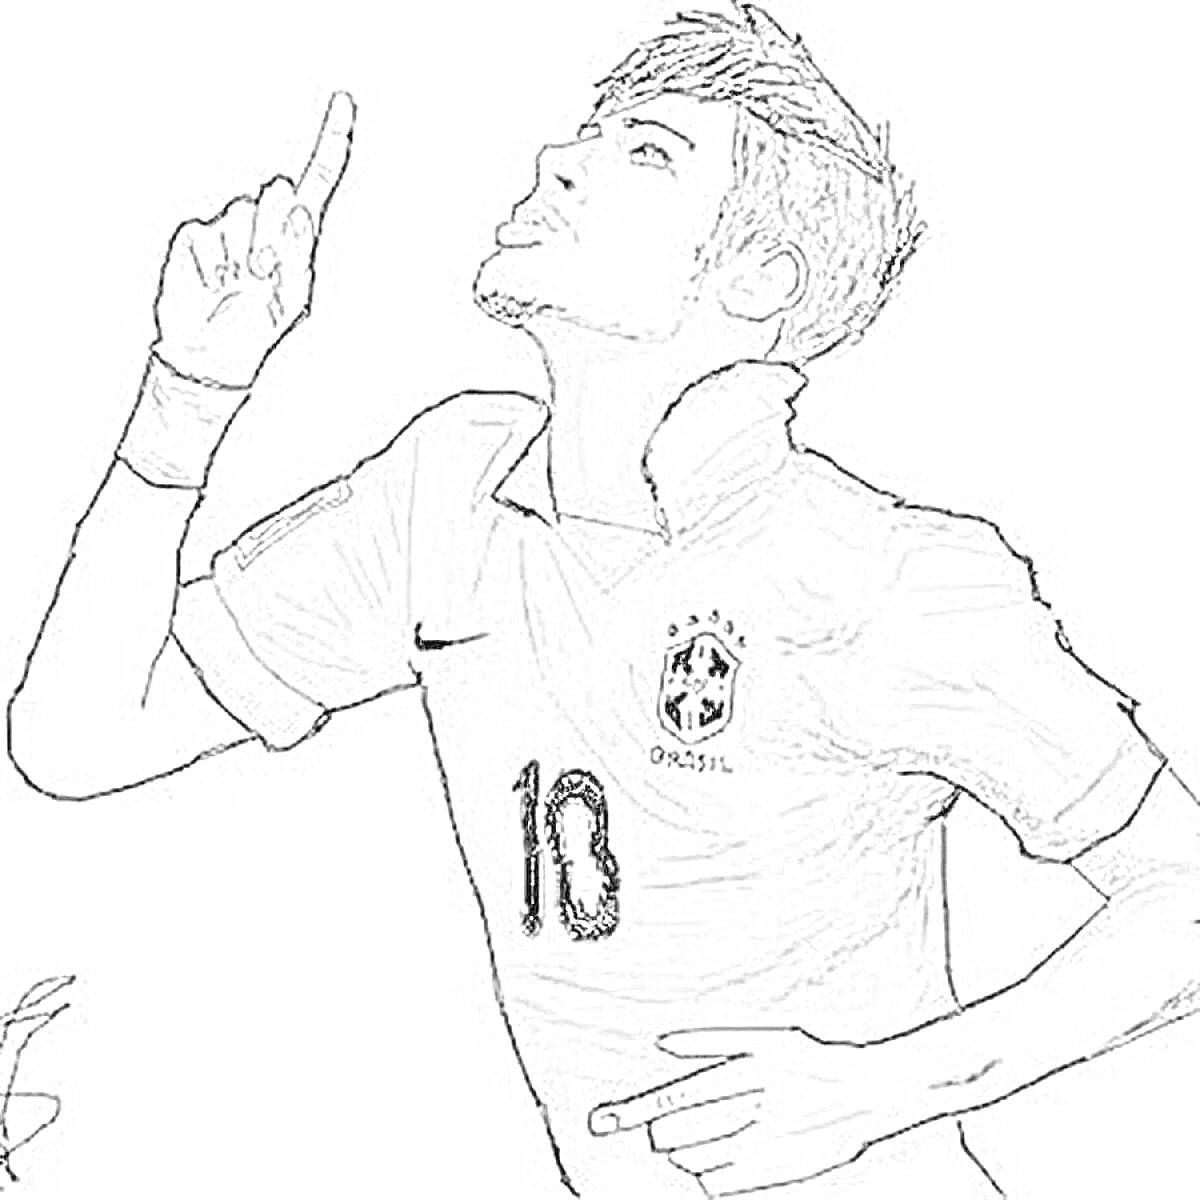 Футболист в форме сборной Бразилии с номером 10, поднимающий руки вверх